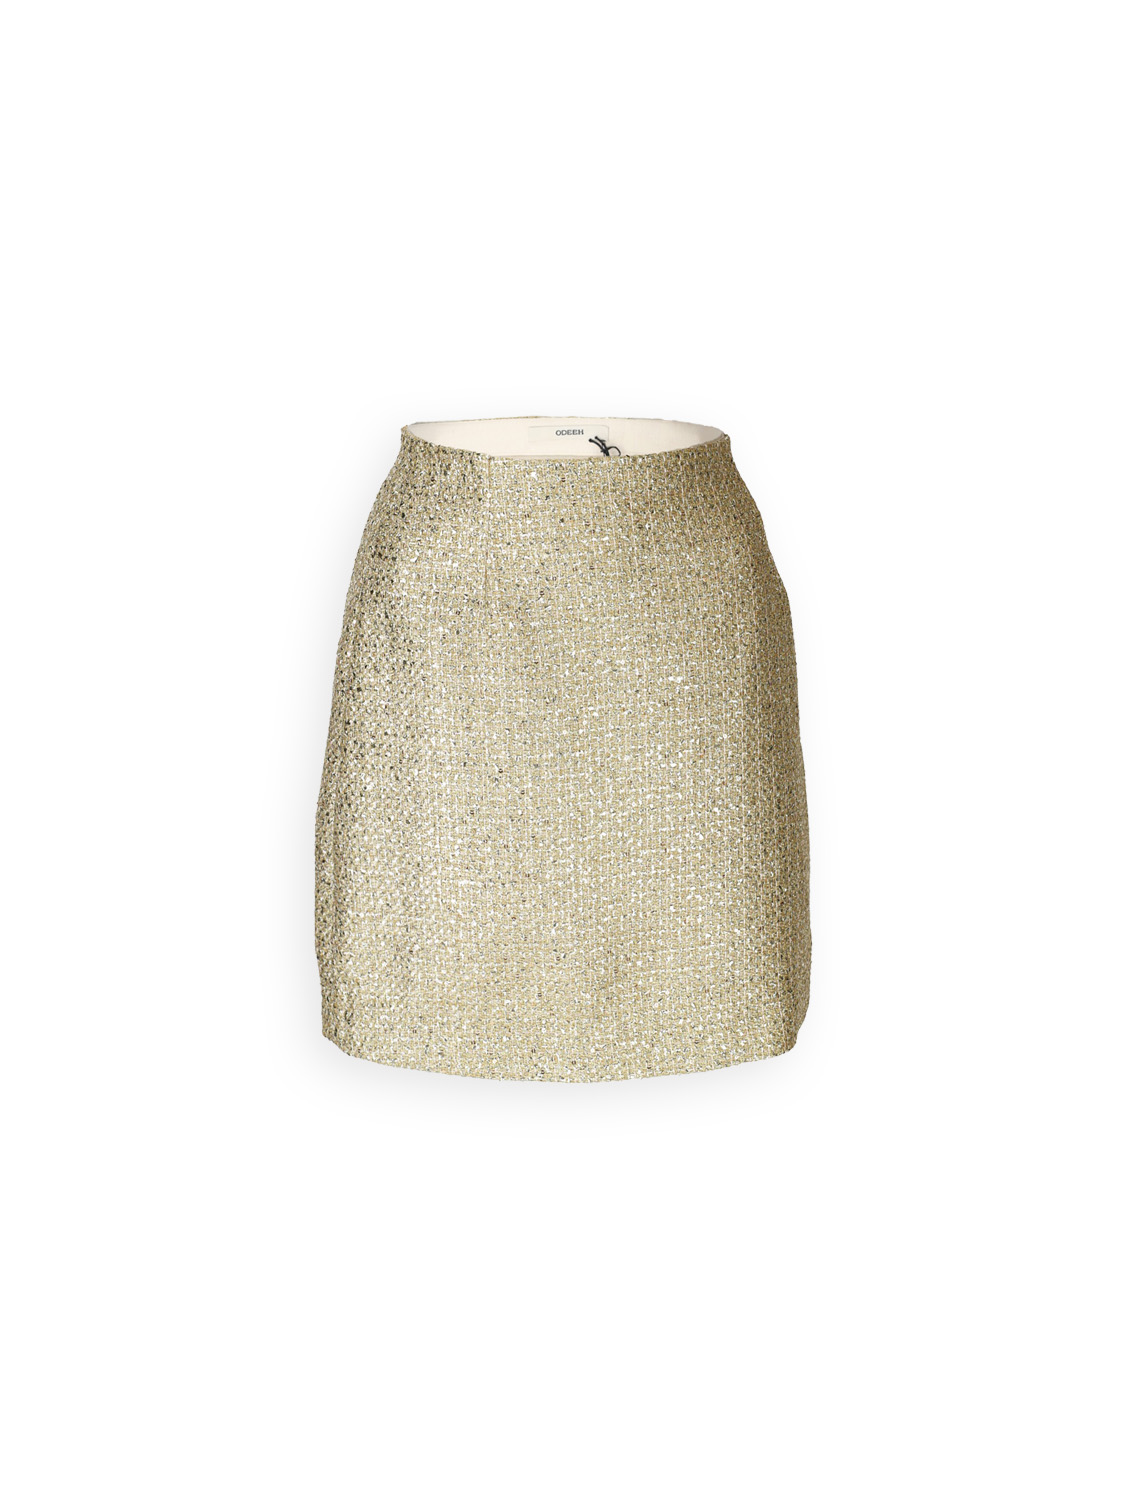 Odeeh Gold Brocade - Brocade mini skirt with lurex details  gold 36